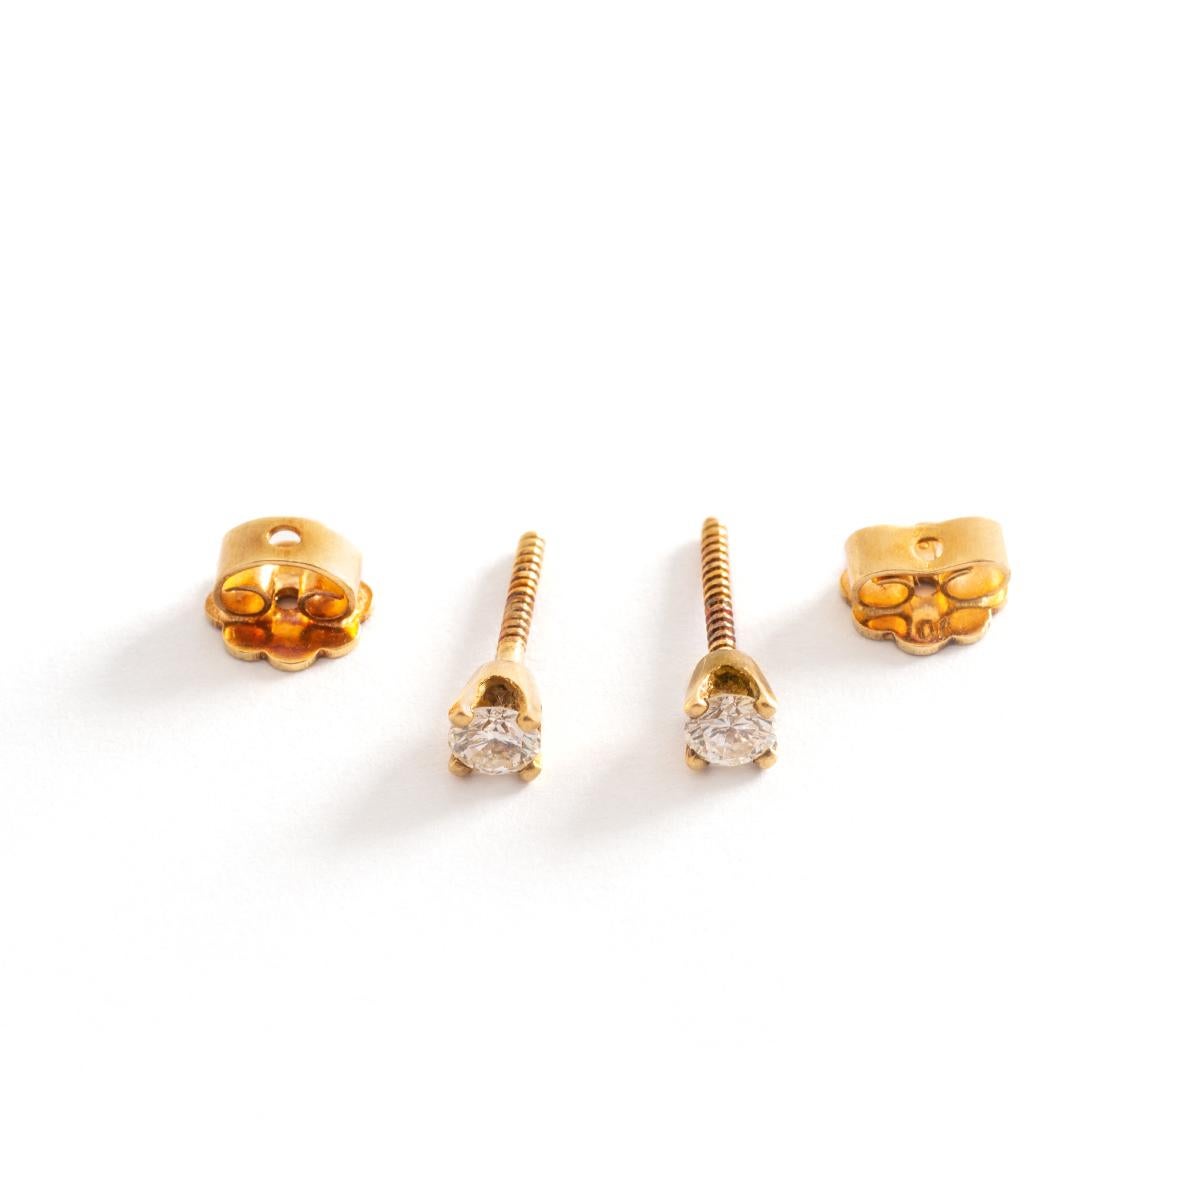 Ohrstecker Ohrringe Diamantkralle auf Gelbgold gefasst.
Durchmesser: 0,40 Zentimeter.
2 Diamanten im Rundschliff: 3.je 22 Millimeter.
Ungefähr 0,24 Karat insgesamt.
Bruttogewicht: 1,17 Gramm.